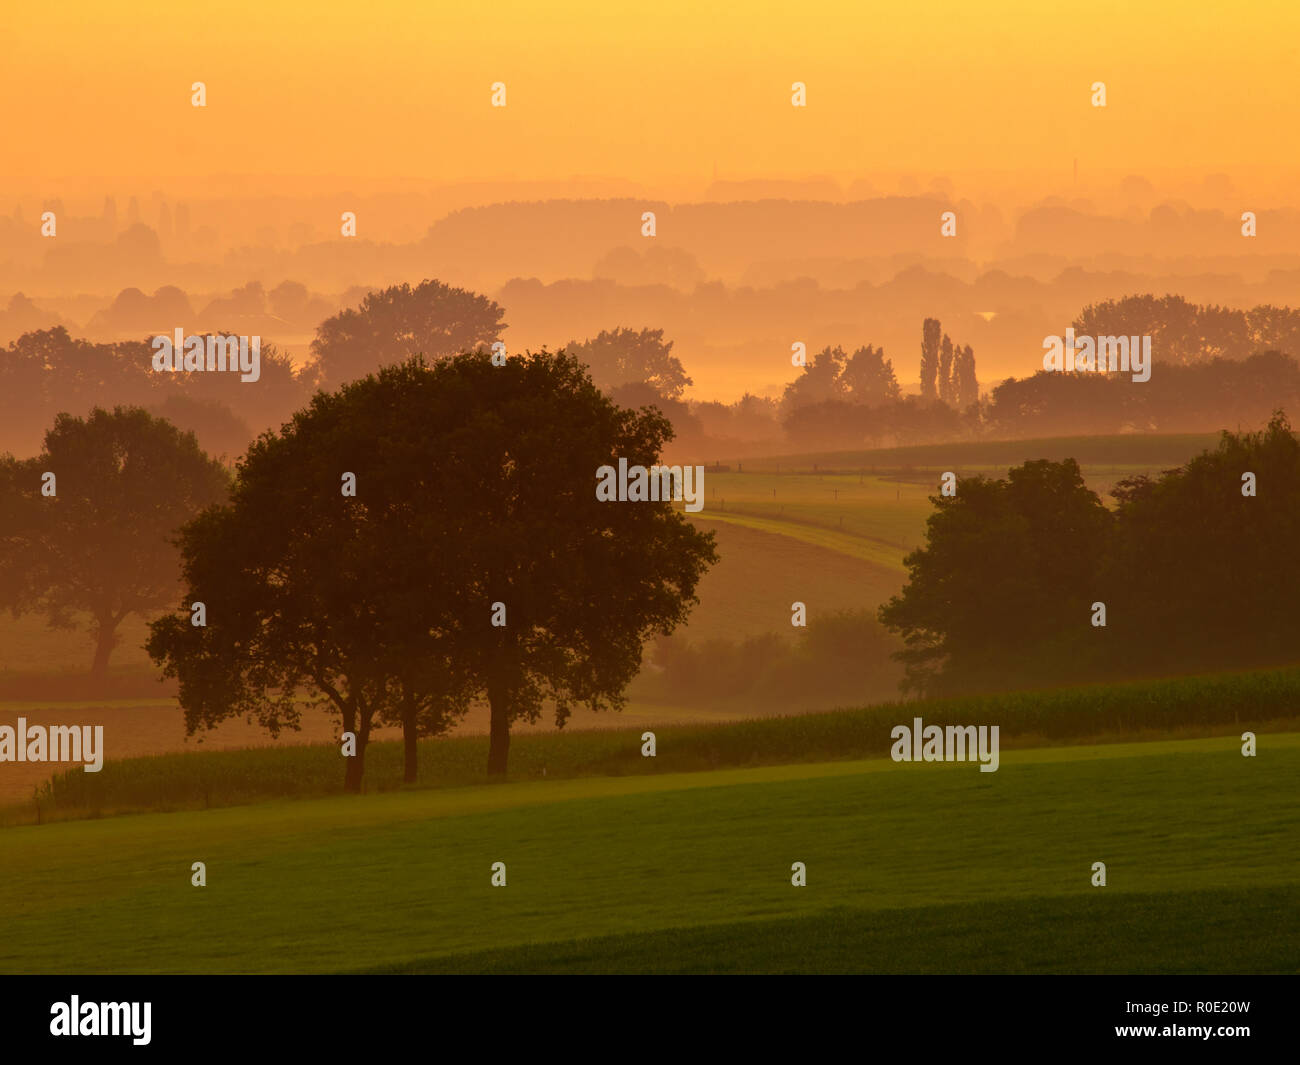 Orange sunrise over a misty agricultural landscape Stock Photo